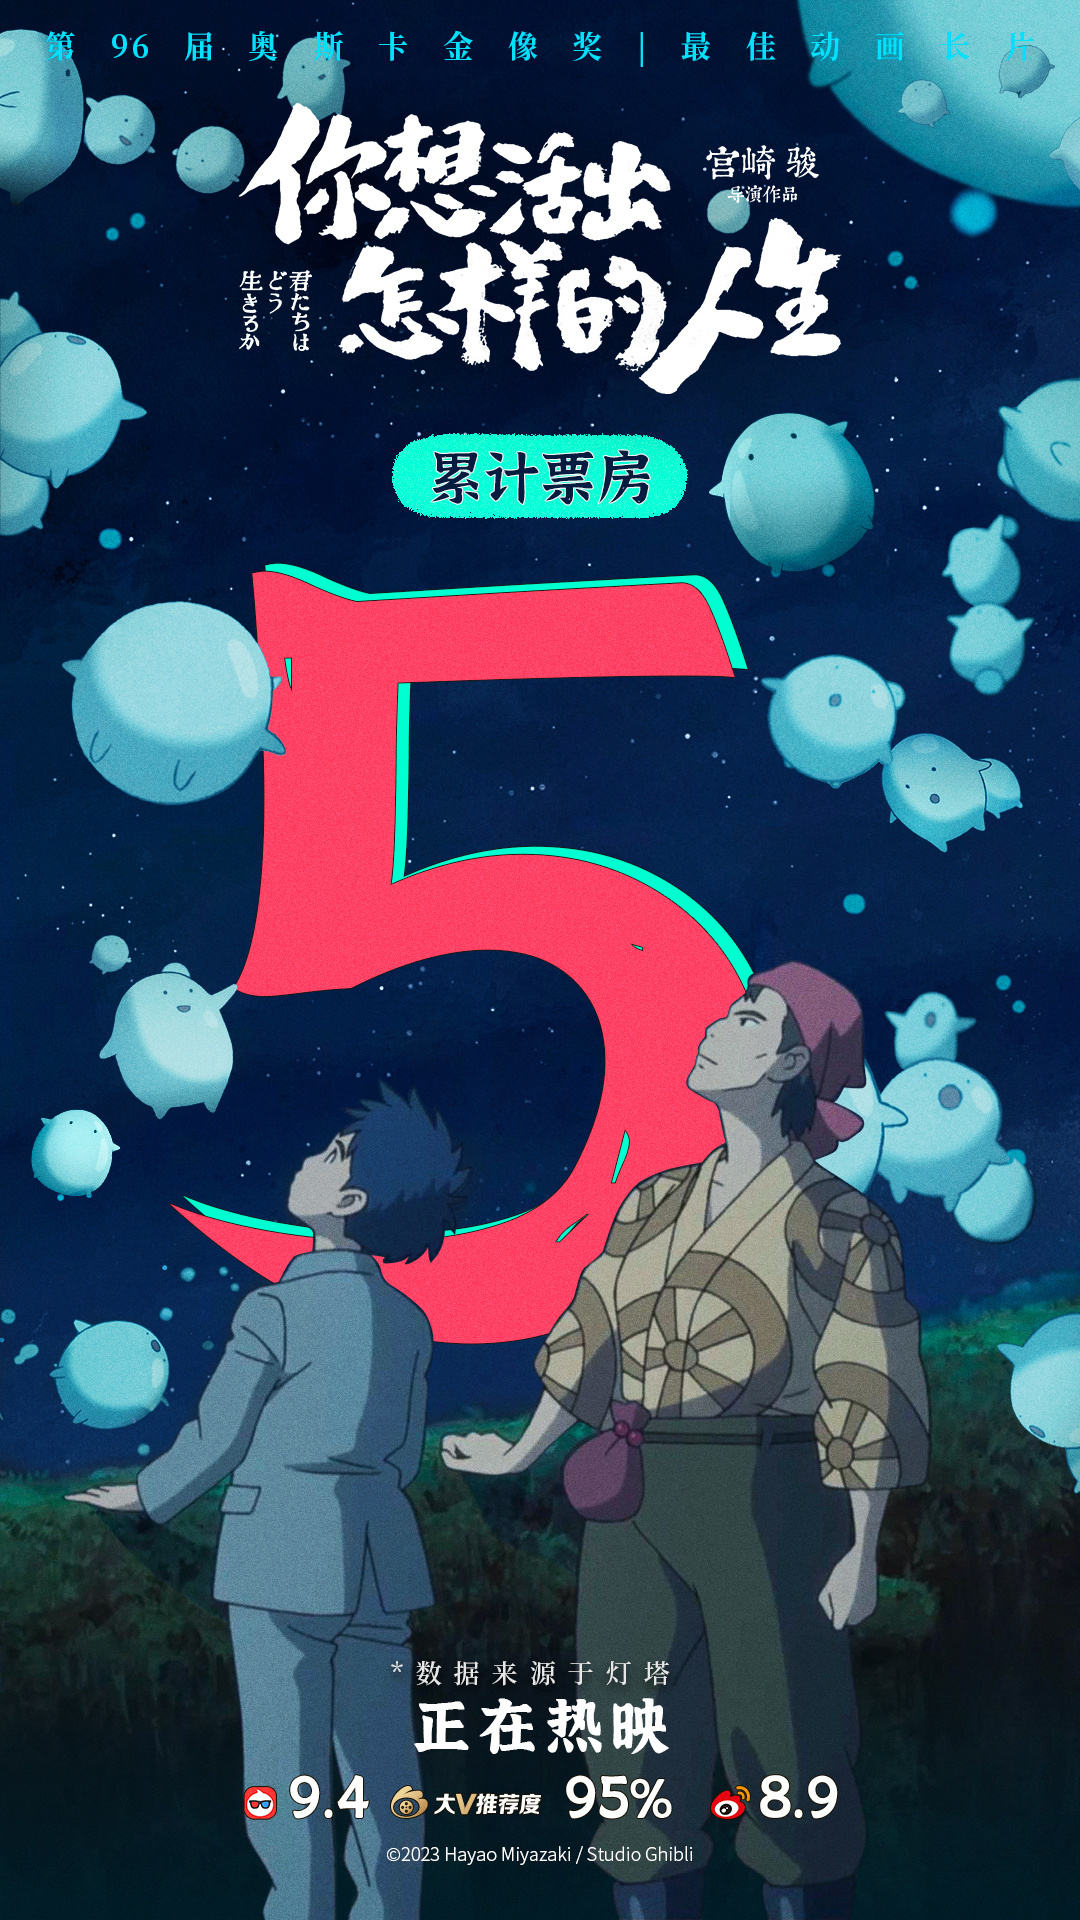 上映5天 宫崎骏影戏《您念活出如何的人死》国内票房冲破5亿